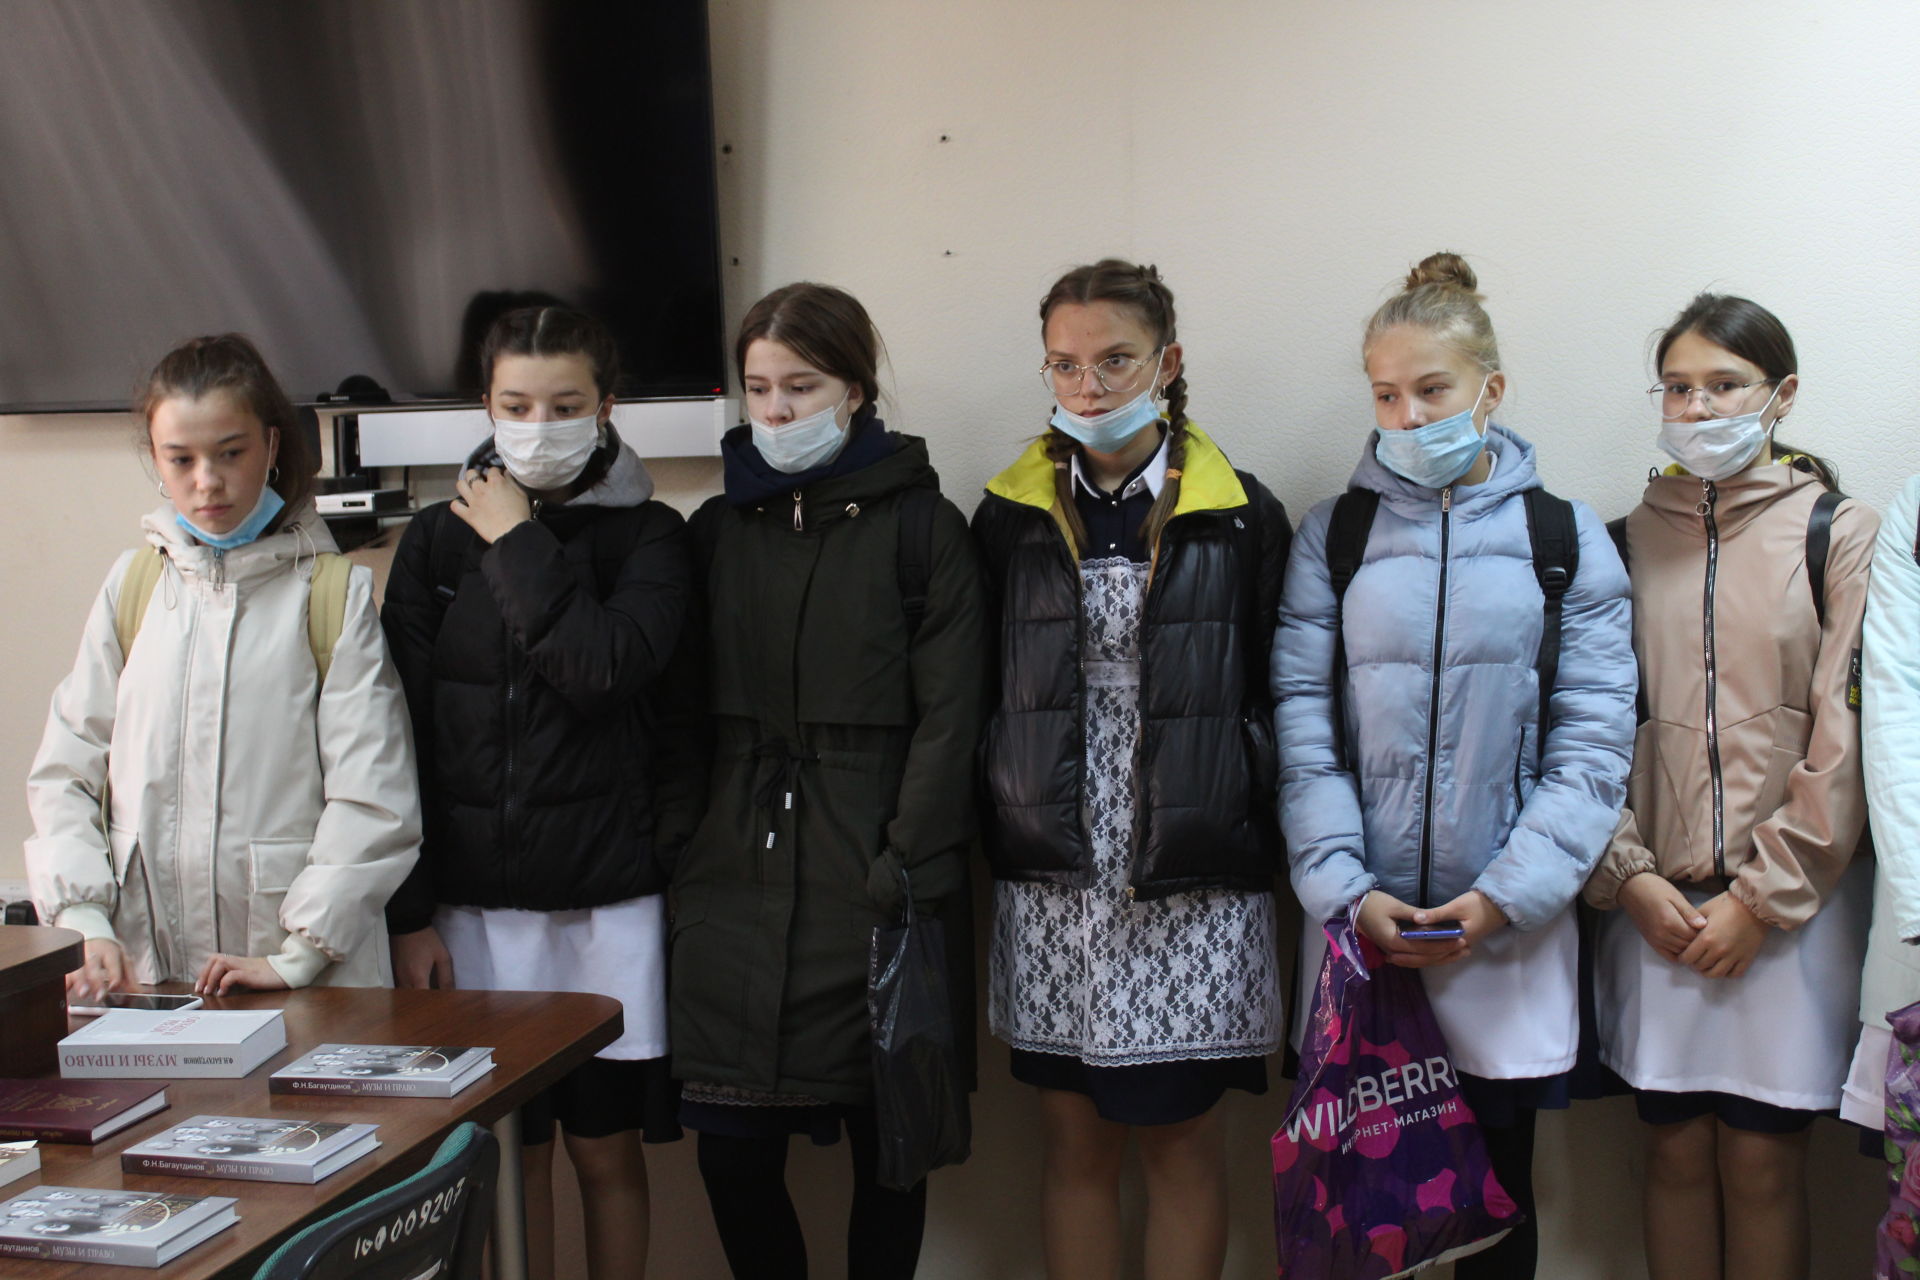 Кукморские школьники побывали на экскурсии в прокуратуре района